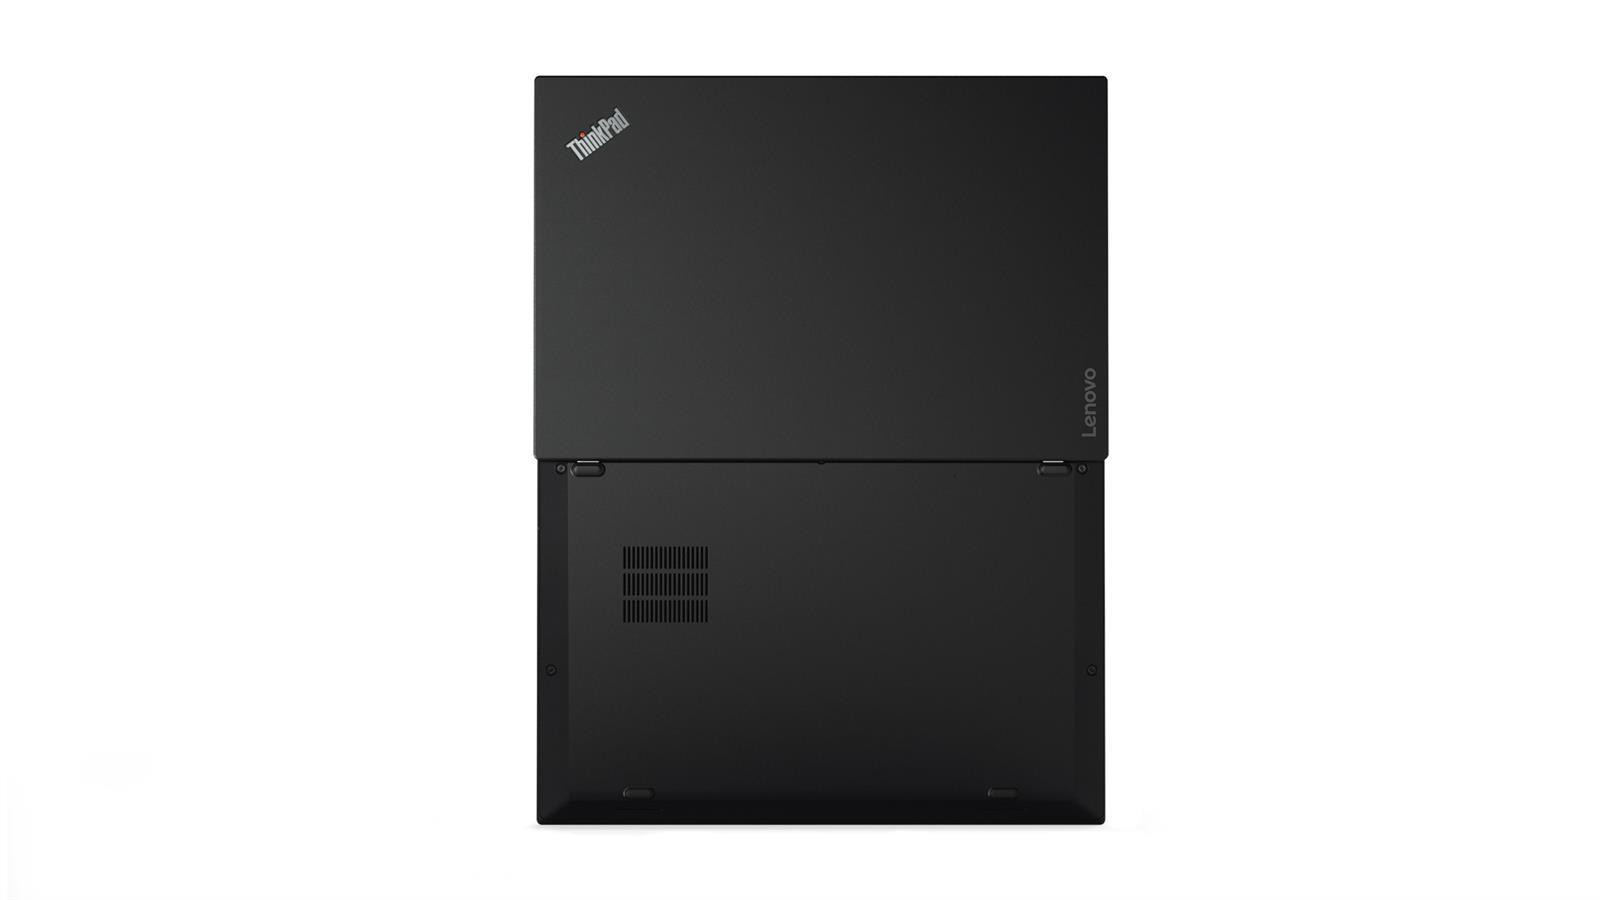 Lenovo ThinkPad X1 Carbon 2017 (5.Gen) 14" Full HD IPS, Core i5-7200U, 8GB, 256GB SSD, Win10Pro